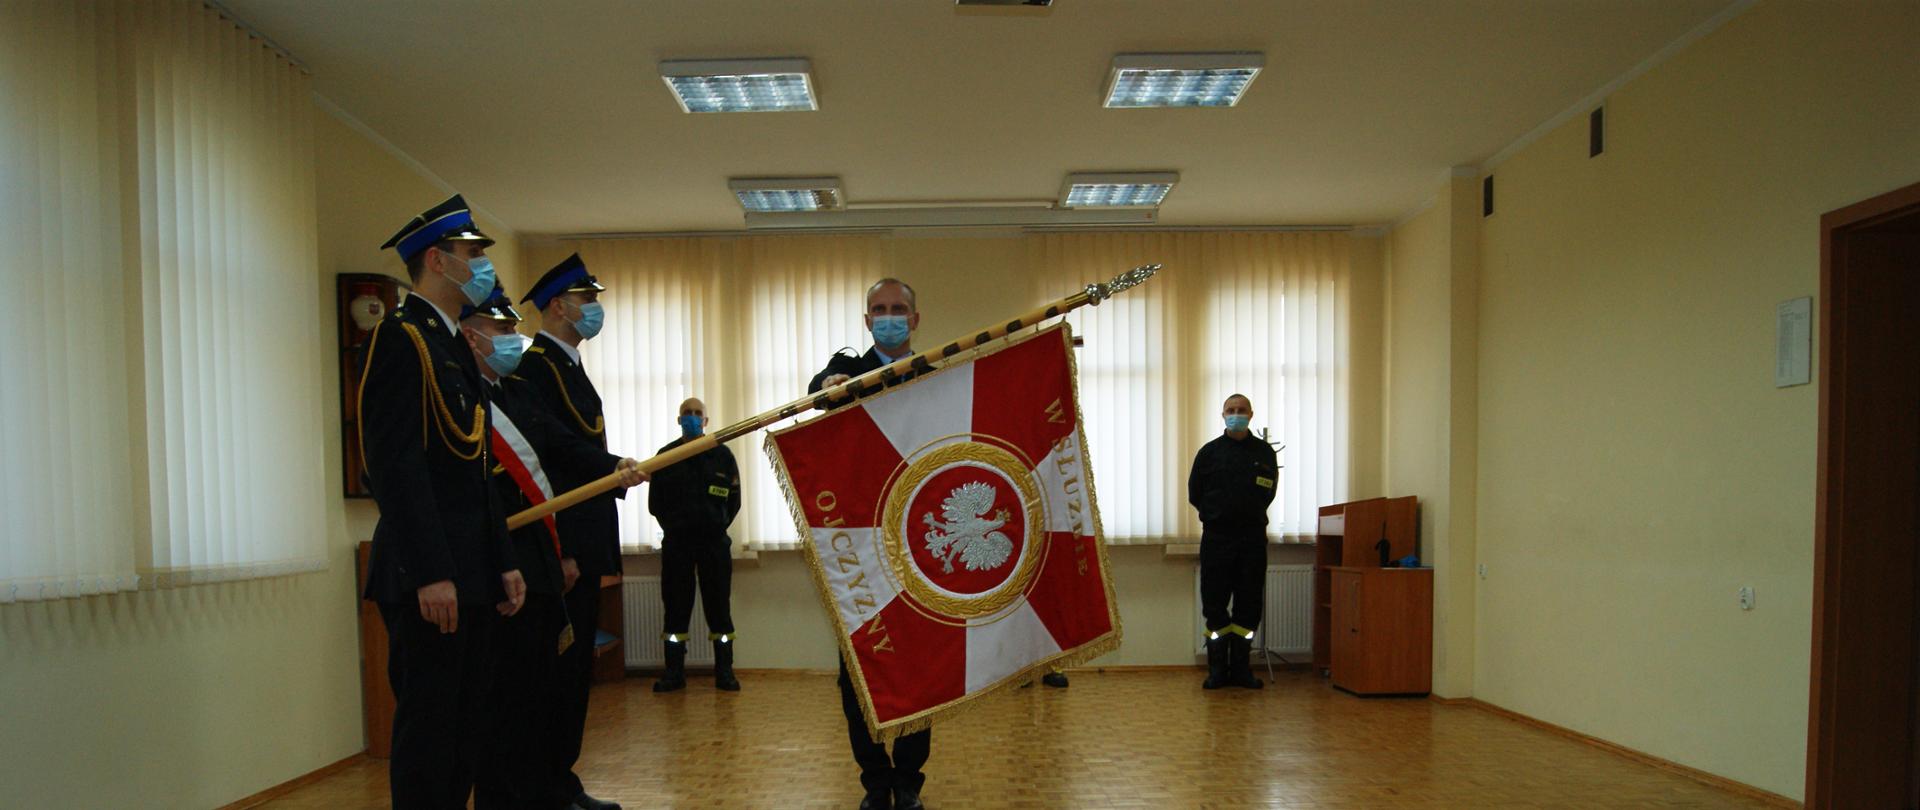 Funkcjonariusz str. Krystian Cichowicz podczas składania roty ślubowania na sztandar KM PSP w Koszalinie, w obecności przełożonych oraz kierownictwa.